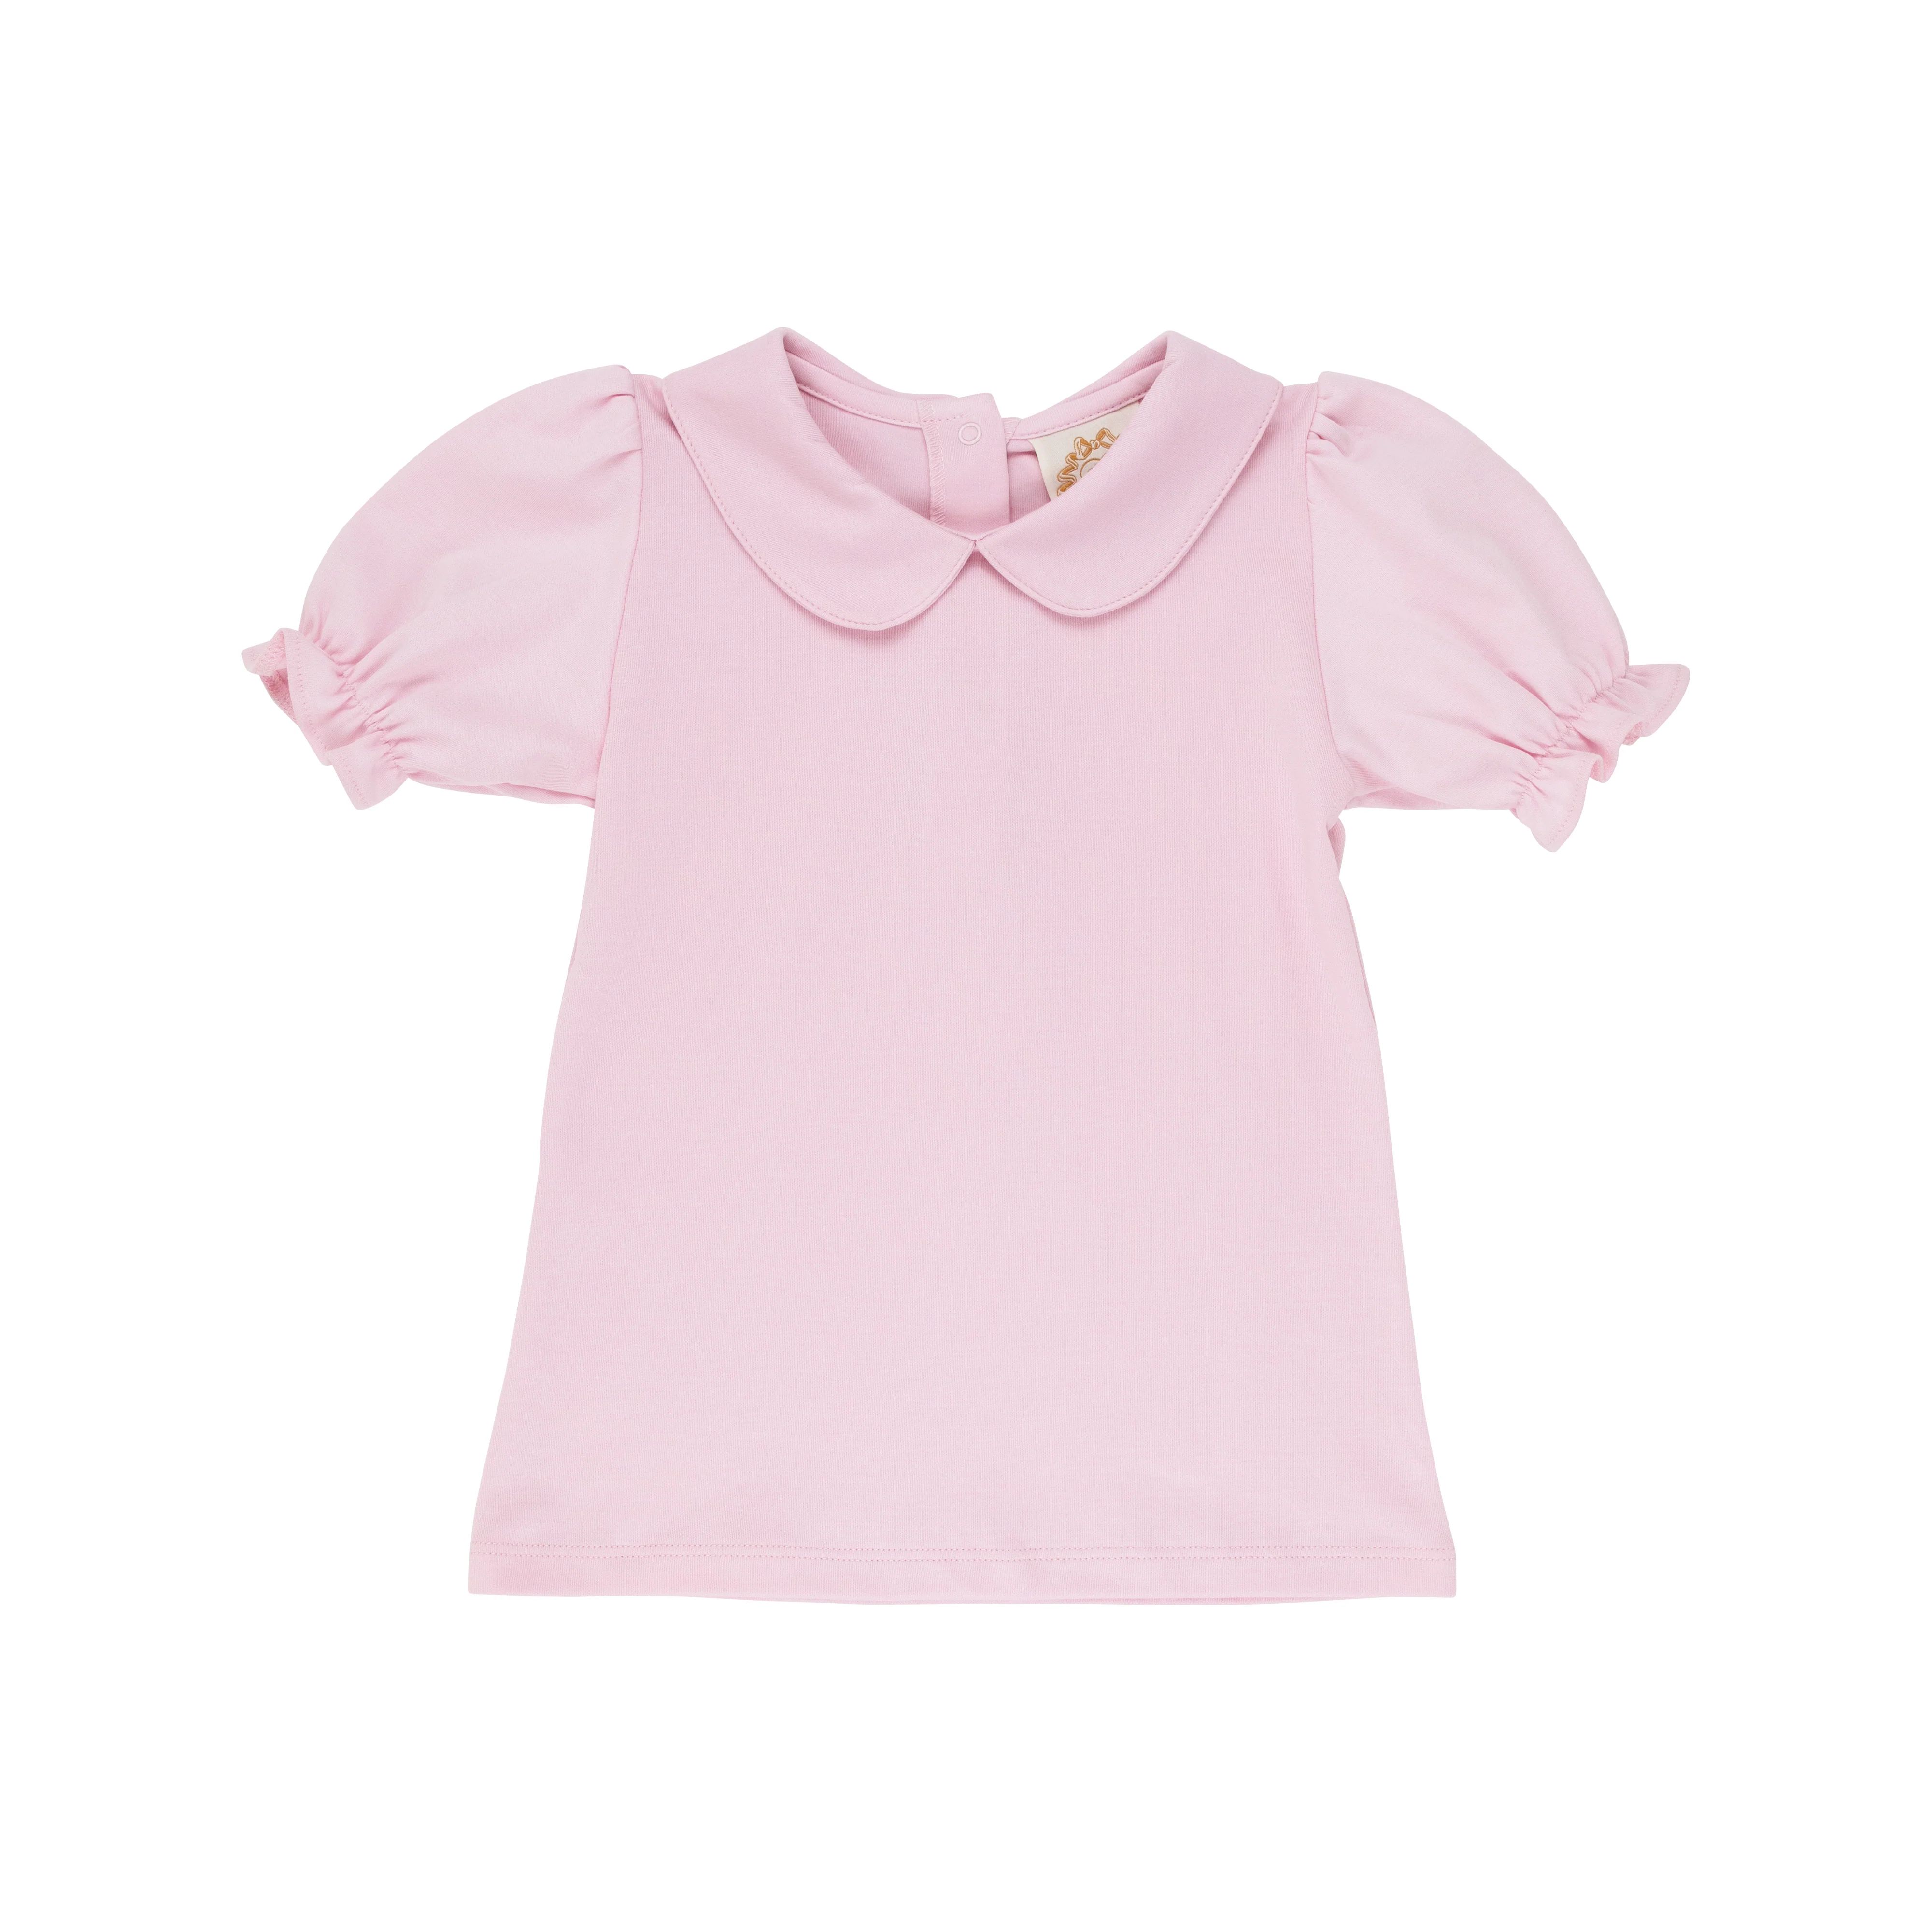 Maude's Peter Pan Collar Shirt & Onesie - Palm Beach Pink | The Beaufort Bonnet Company